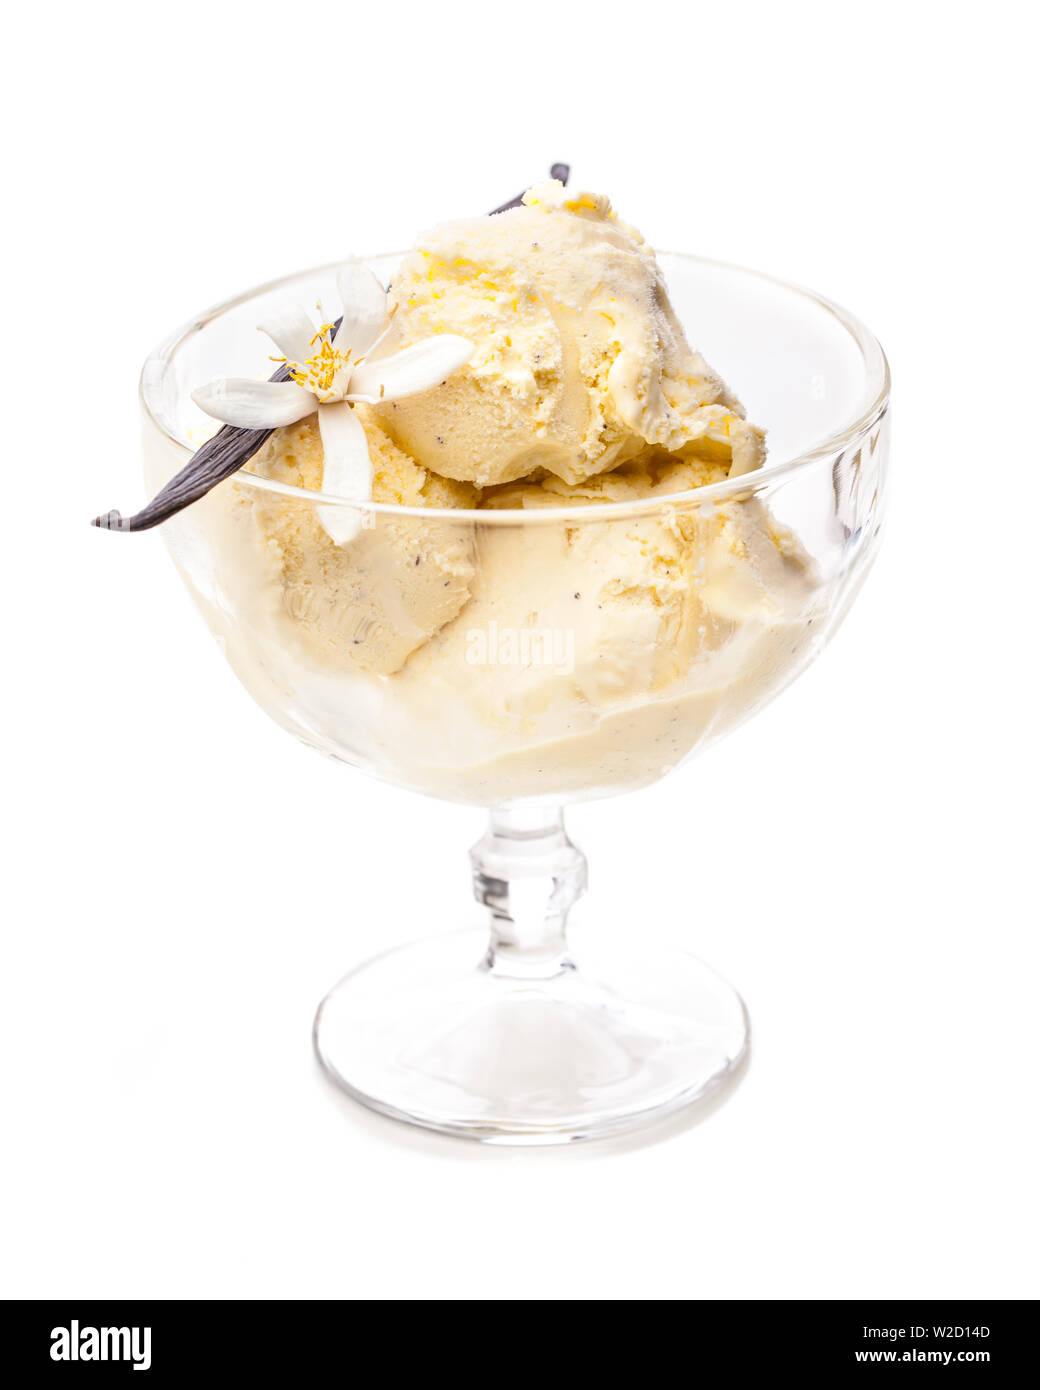 Coupe de glaces sundae : crème glacée à la vanille avec gousse de vanille et fleur en verre isolé sur fond blanc Banque D'Images